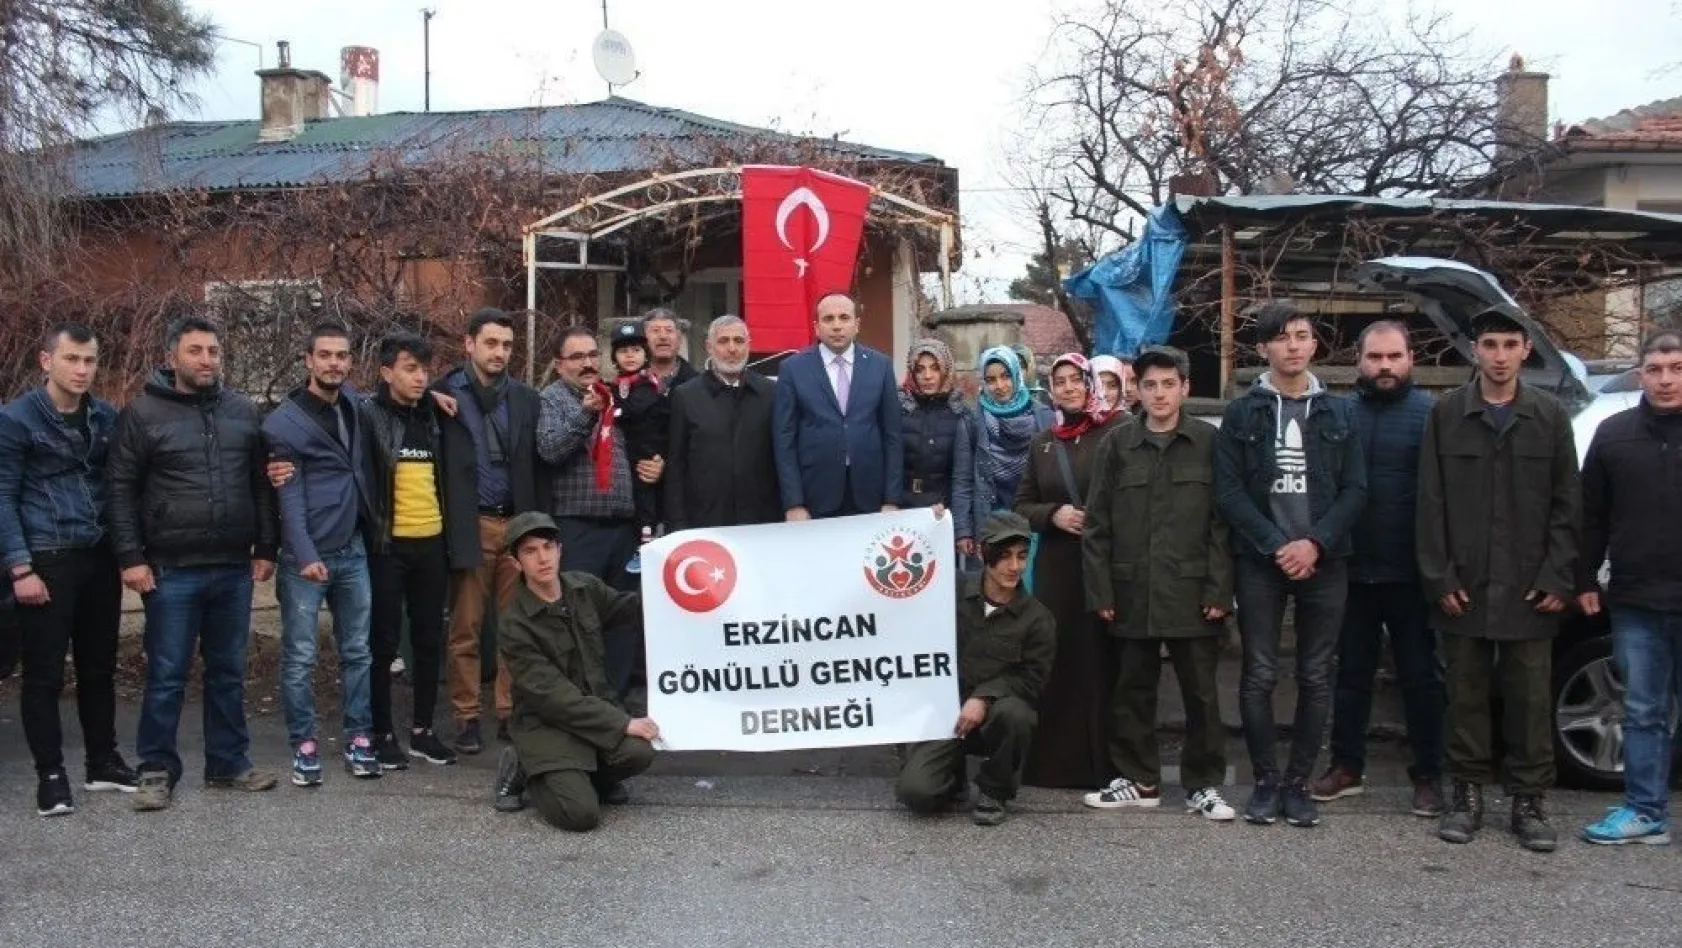 Erzincan'ın yöresel ürünleri Mehmetçiğe gönderildi
